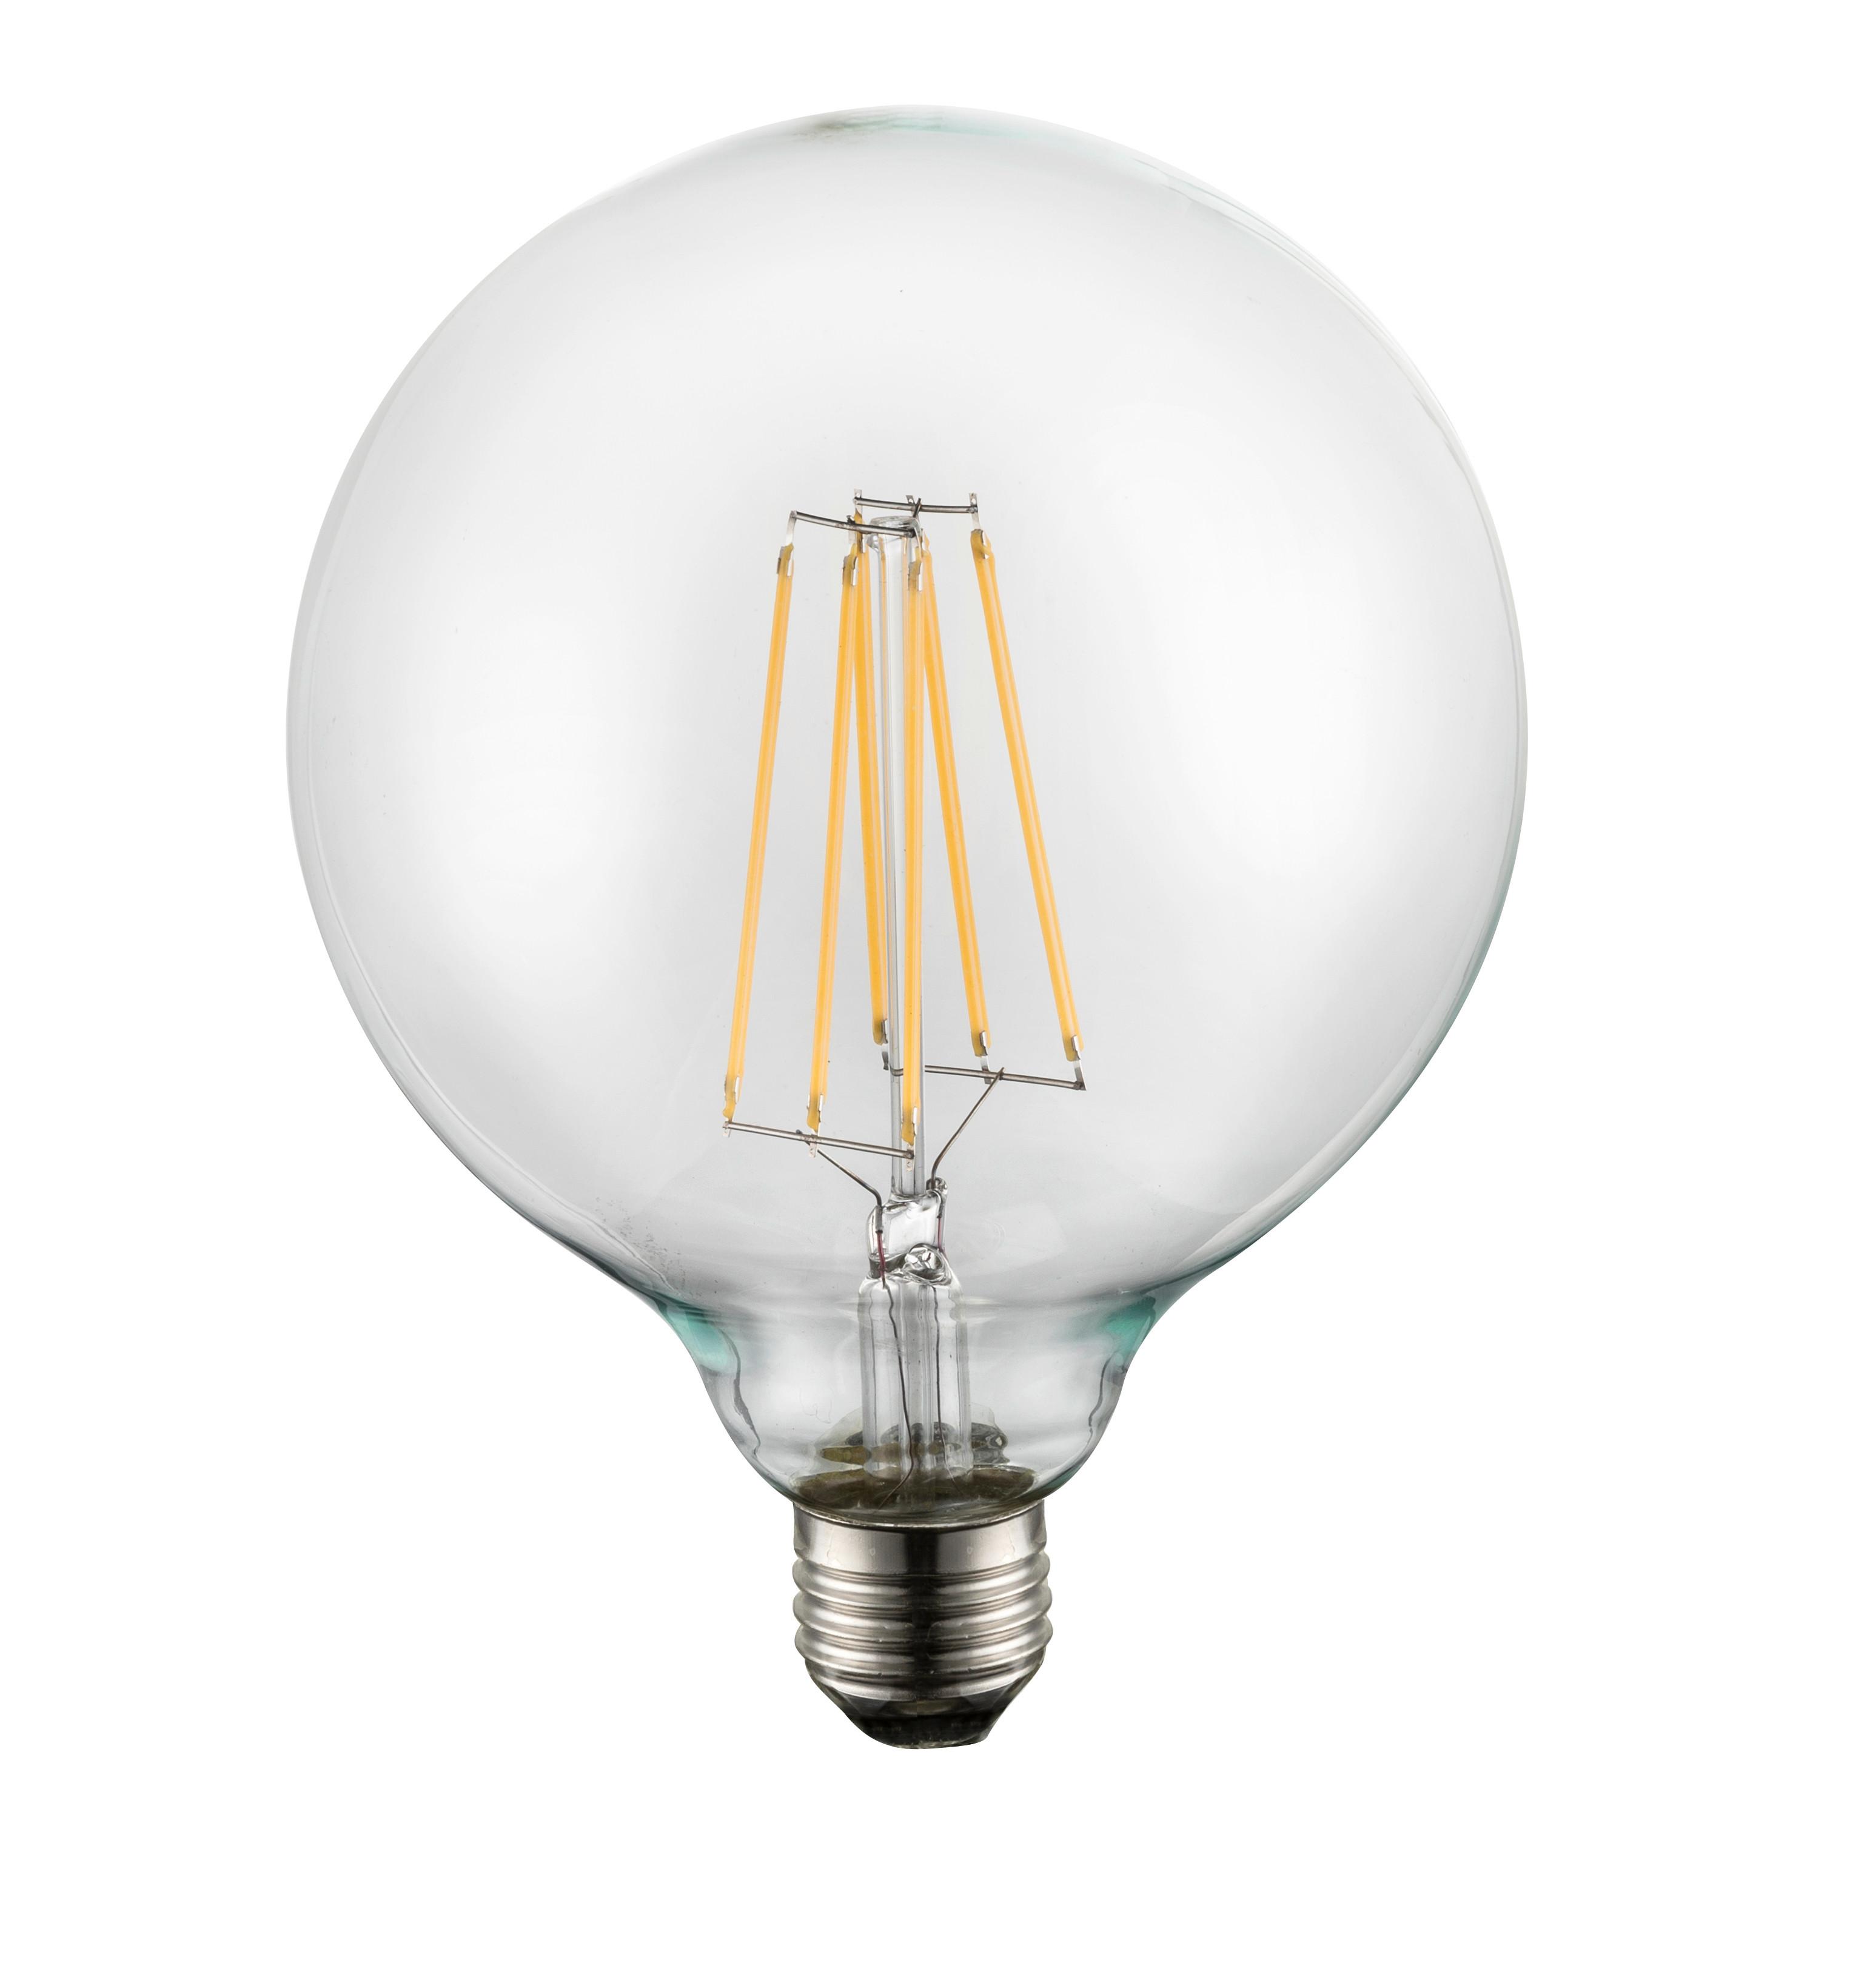 LED-Leuchtmittel 10586 max. 9 Watt - Klar, Glas/Metall (12,5/17,5cm)